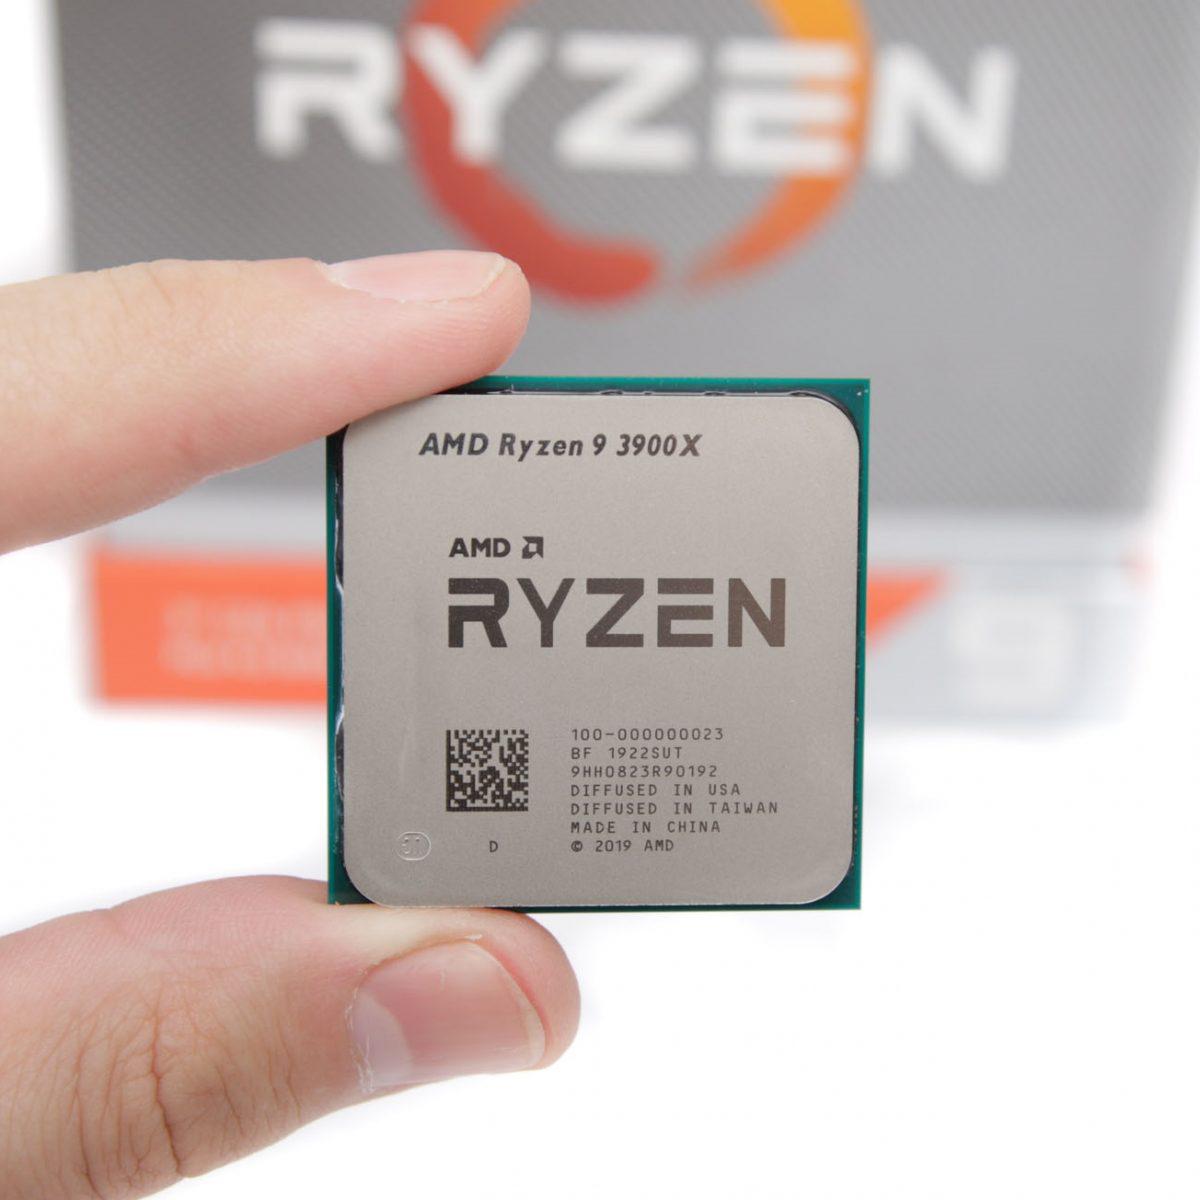 3. AMD Ryzen 9